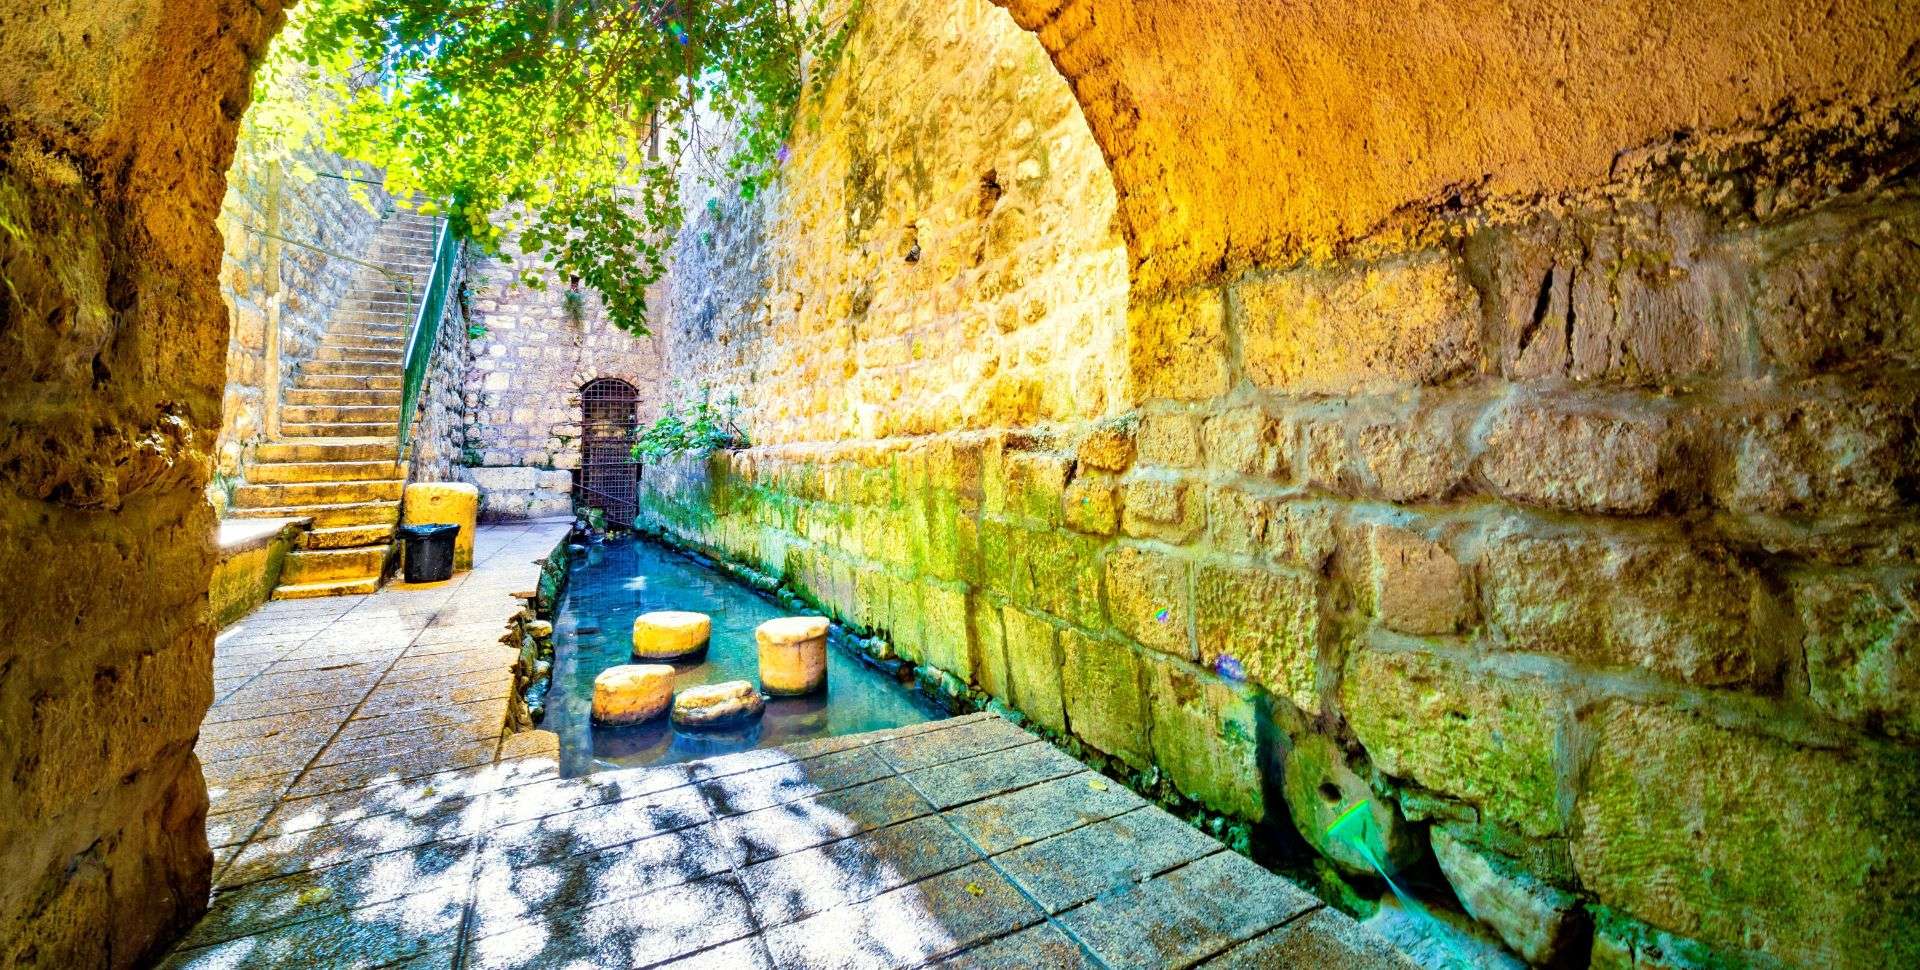 צילום של בואו לחוויה היסטורית מרגשת בעיר דוד - המקום בו נולדה ירושלים!